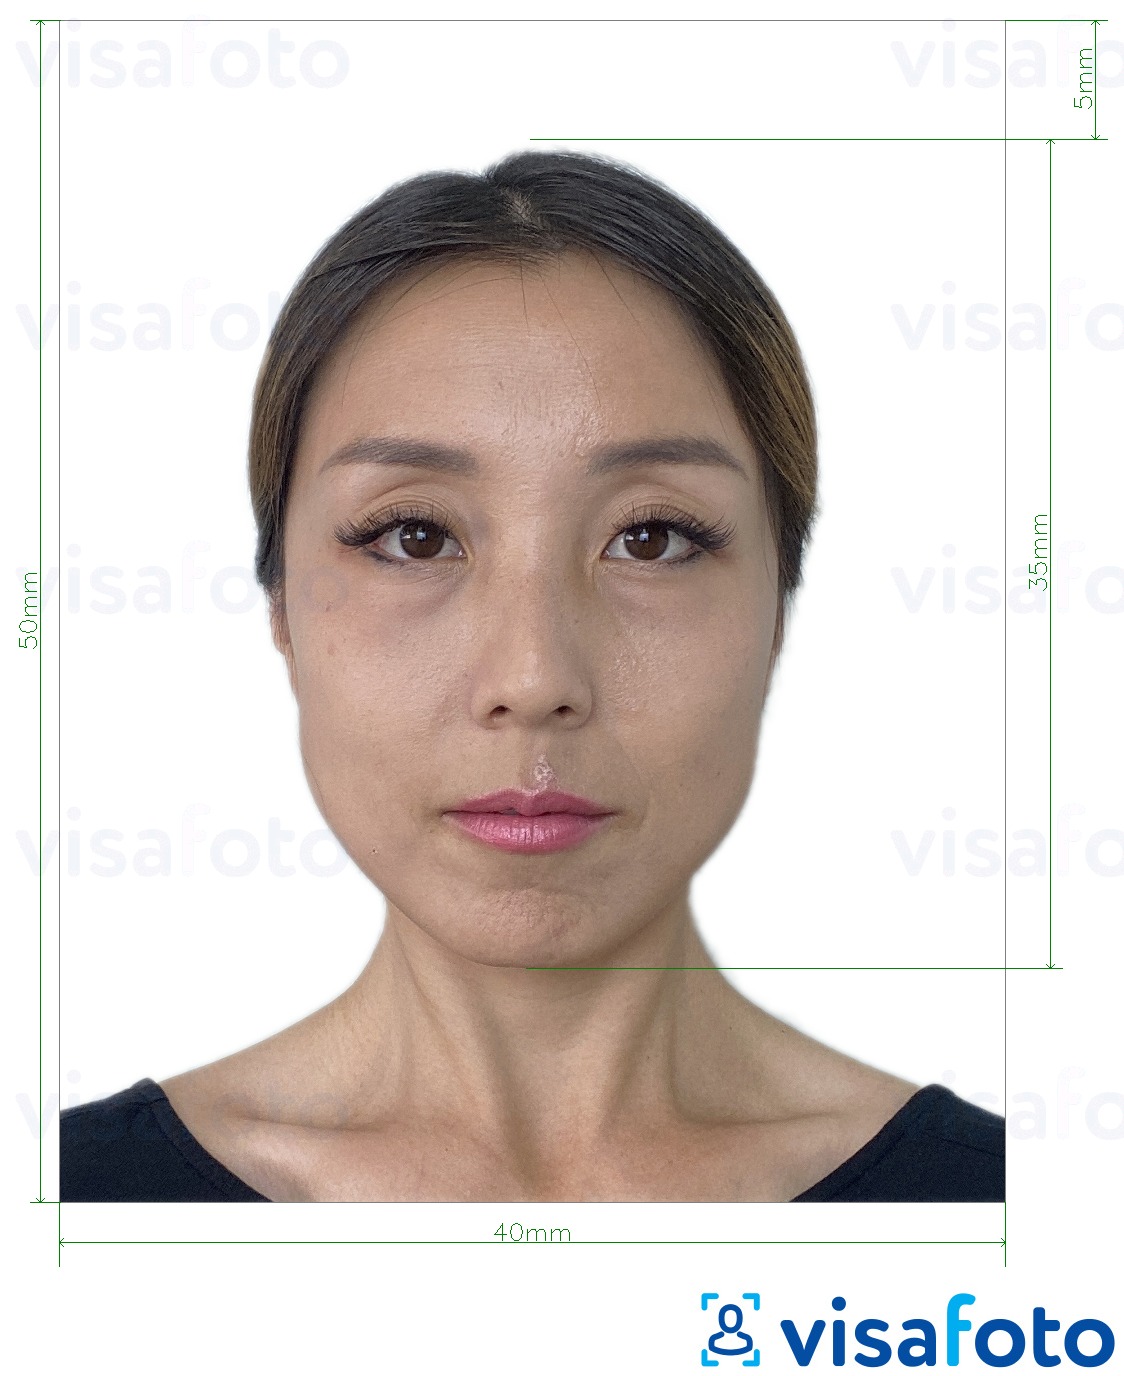  Gongkong pasporti 40x50 mm (4x5 sm) uchun rasm namunasi zaruriy hajm xususiyatlariga ega